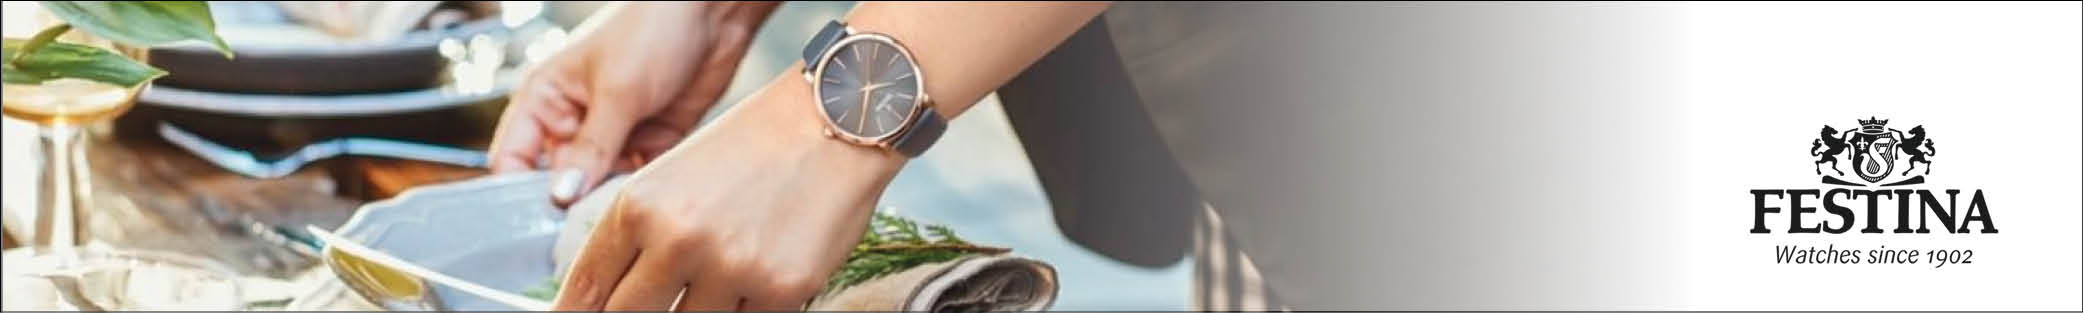 Festina laver både sporty og elegante ure - køb dit nye Festina ur online i dag